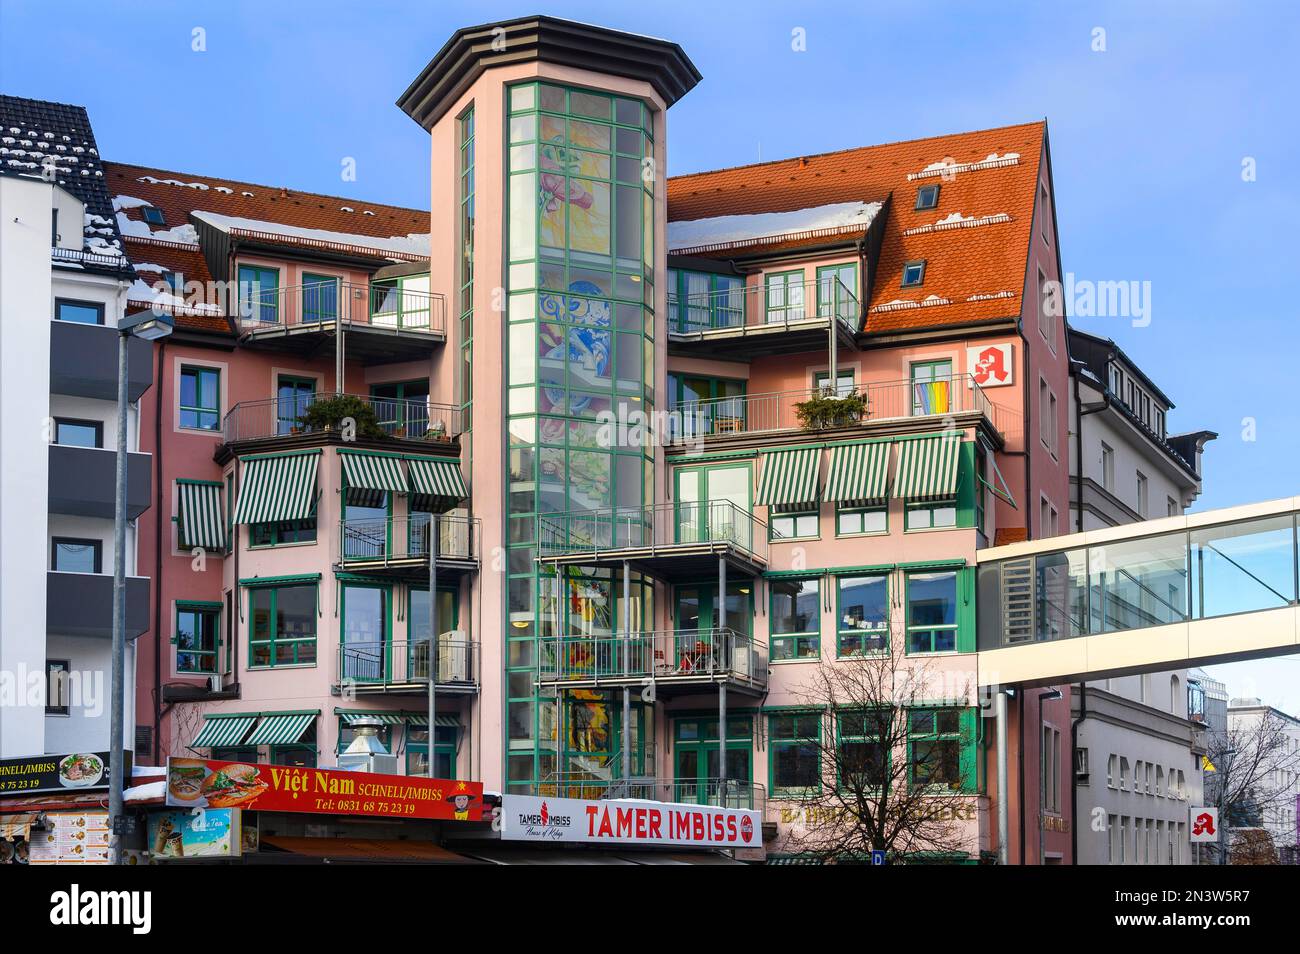 Architettura insolita con balconi e torri e bancarelle di snack, Kempten, Allgaeu, Baviera, Germania Foto Stock